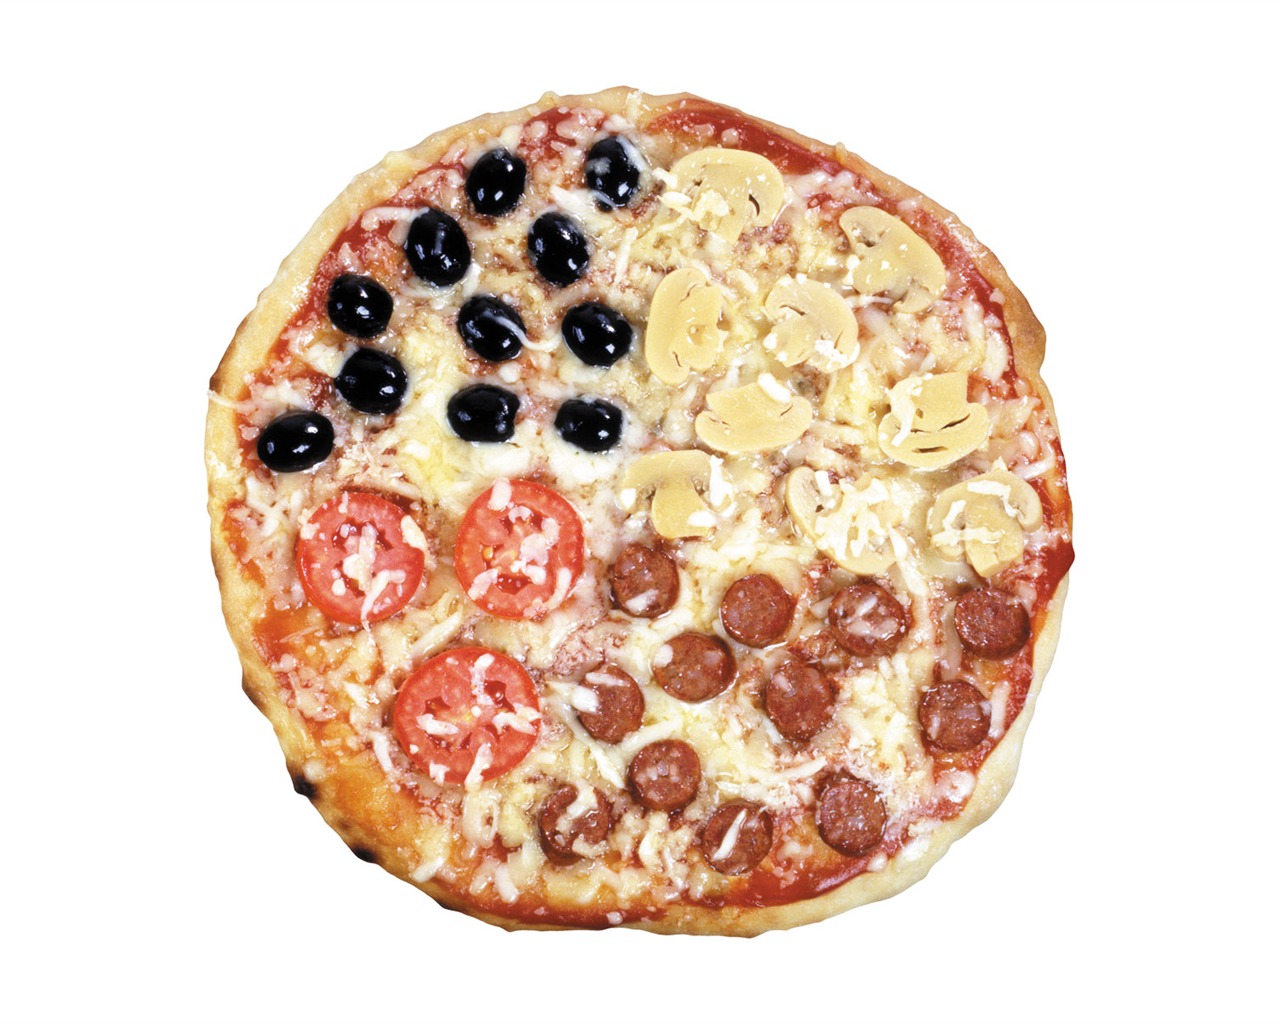 Fondos de pizzerías de Alimentos (3) #6 - 1280x1024